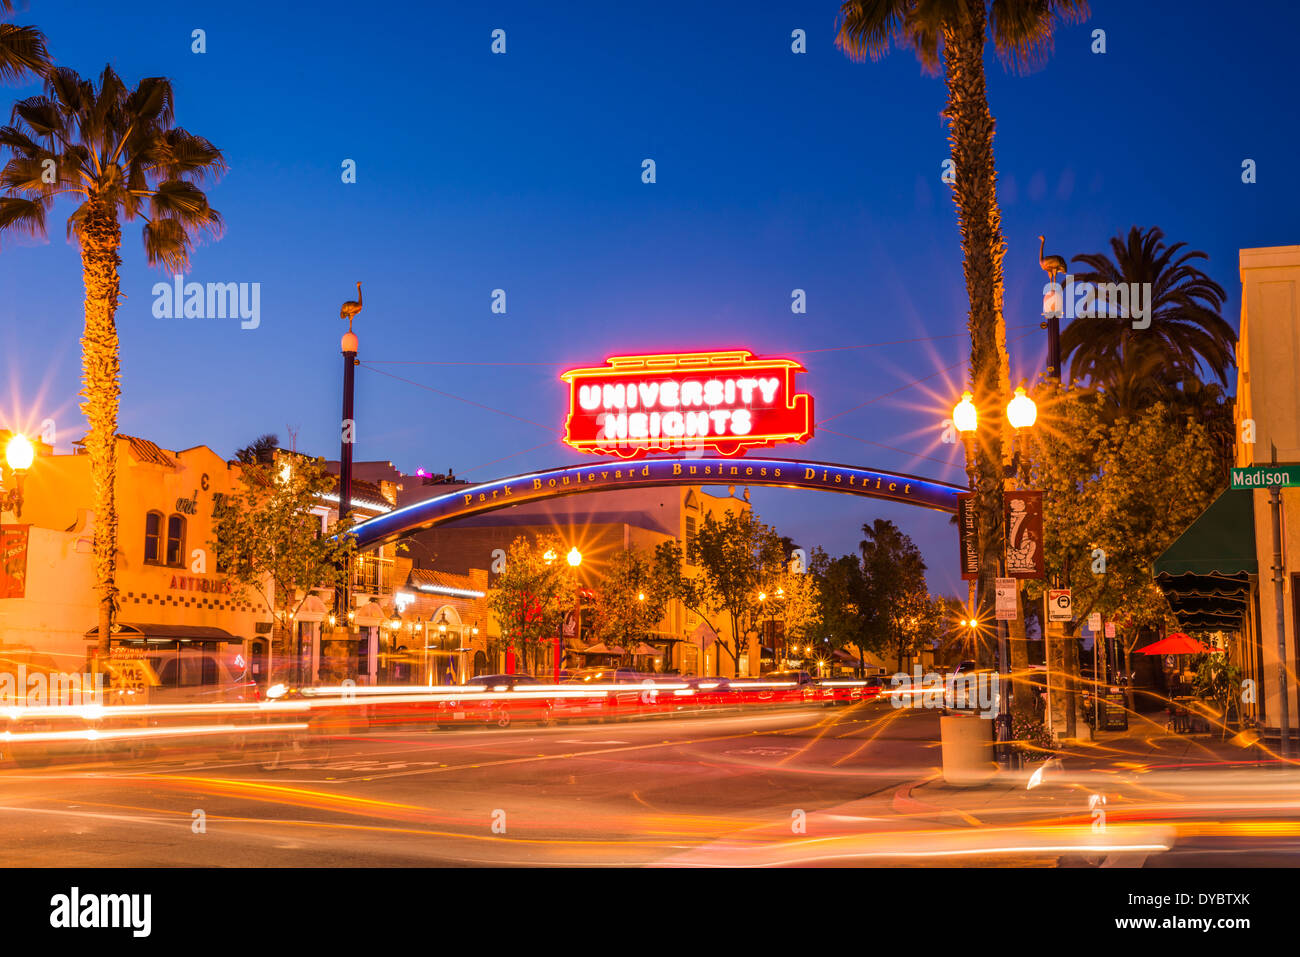 In der Nacht fotografiert University Heights-Sign.  San Diego, California, Vereinigte Staaten von Amerika. Stockfoto